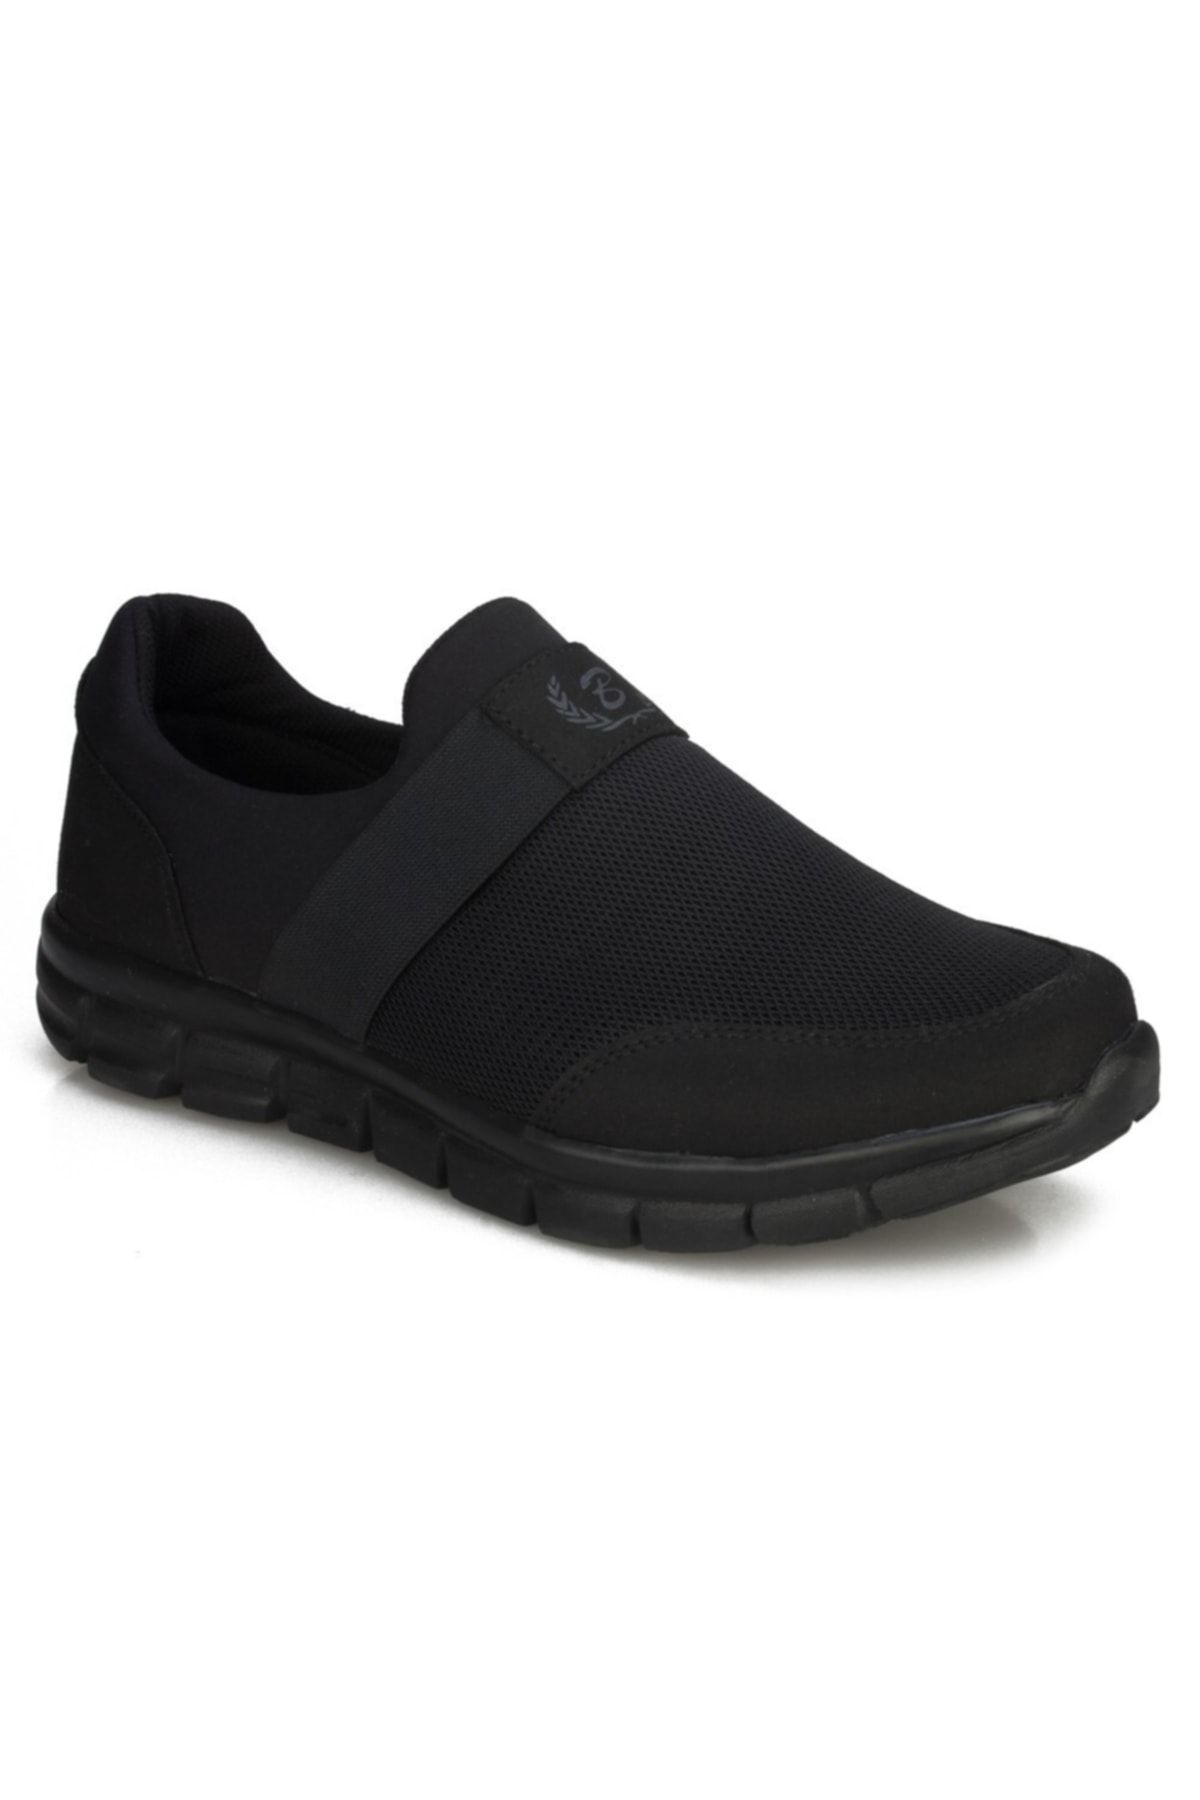 BlackSea Siyah - Unisex Hafif Yumuşak Taban Bağcıksız Günlük Yürüyüş Spor Ayakkabı